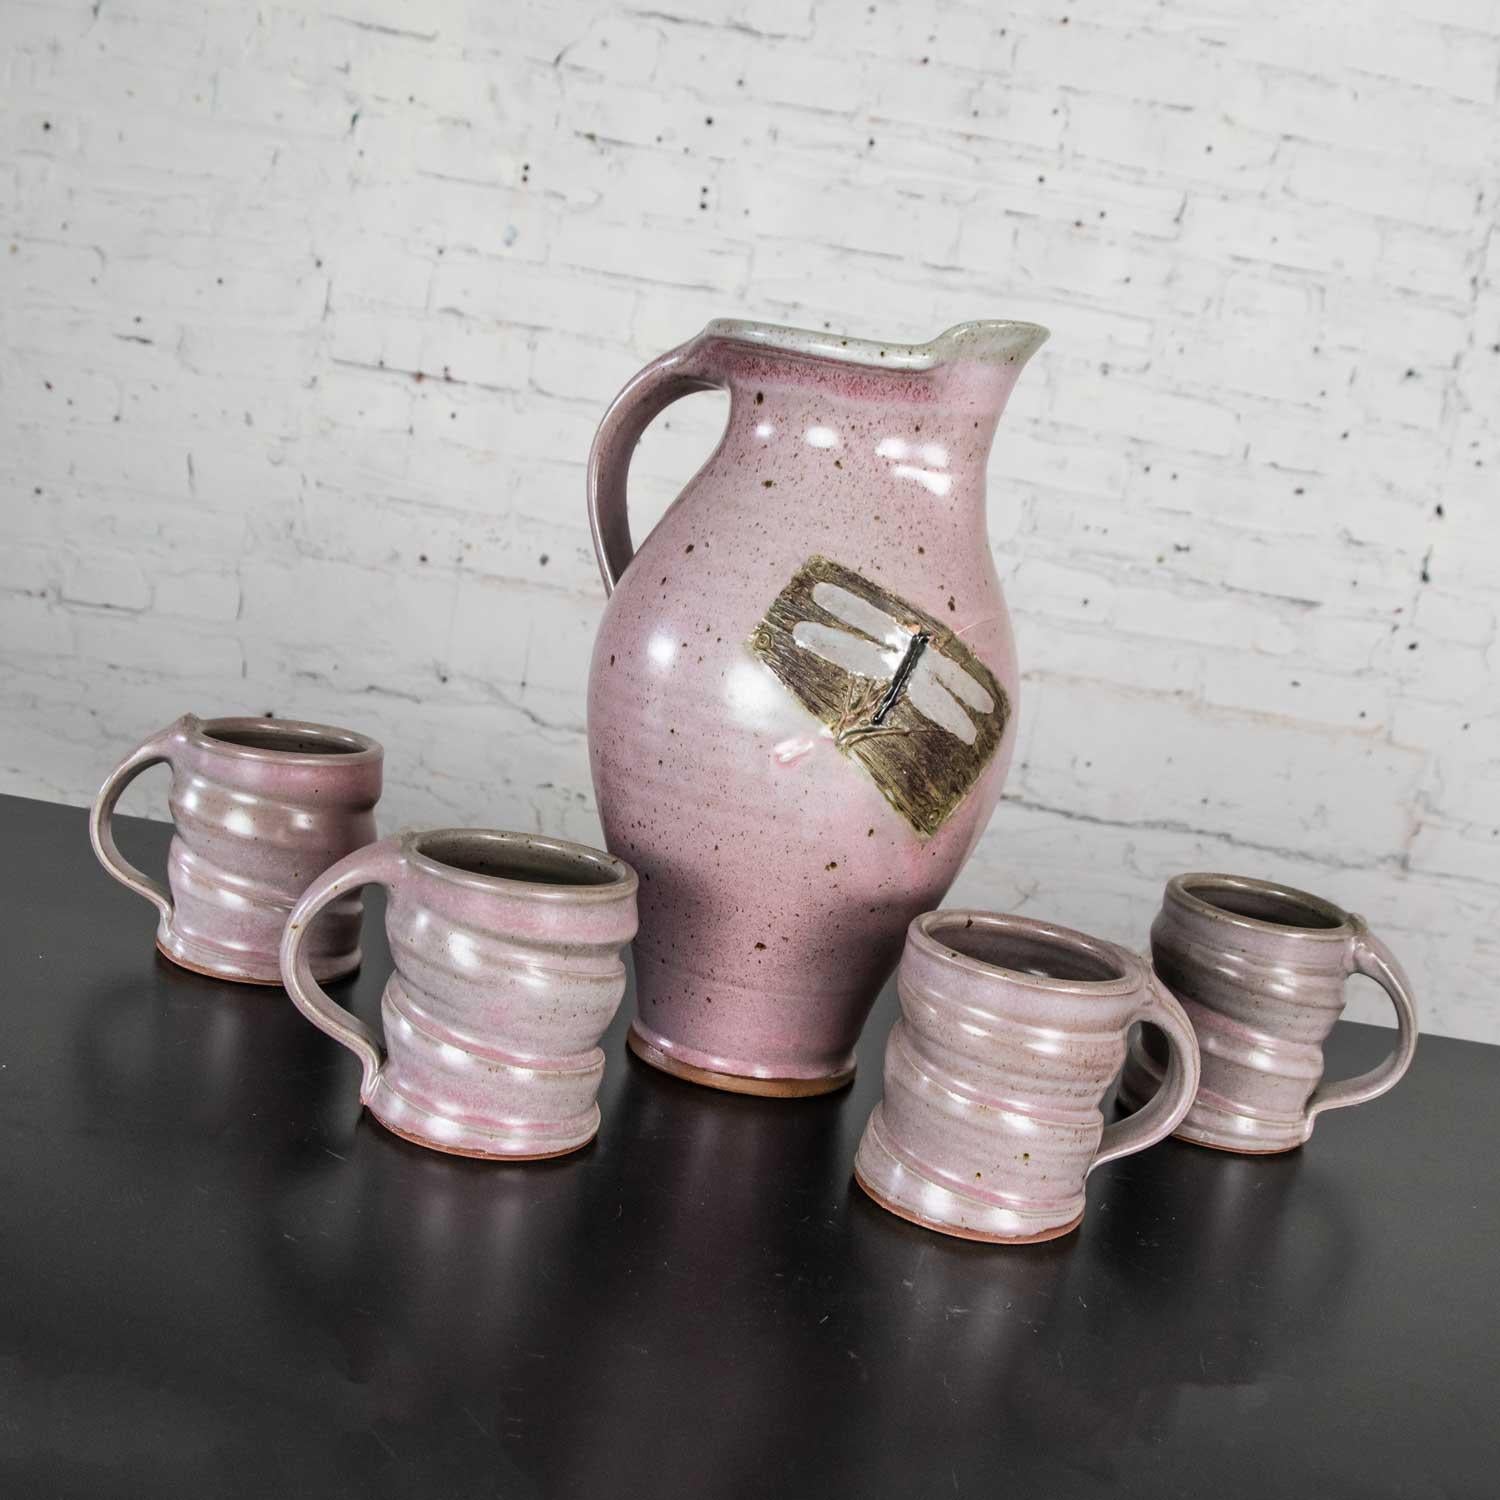 Hübsches lila Studio Pottery Keramik handgemachte heiße Schokolade Set enthält einen Krug und vier Tassen. Schöne altersgerechten Zustand mit keine Chips, Risse oder chiggers, dass wir gesehen haben. Siehe Fotos, ca. 2001.

Hinweis: Der Versand